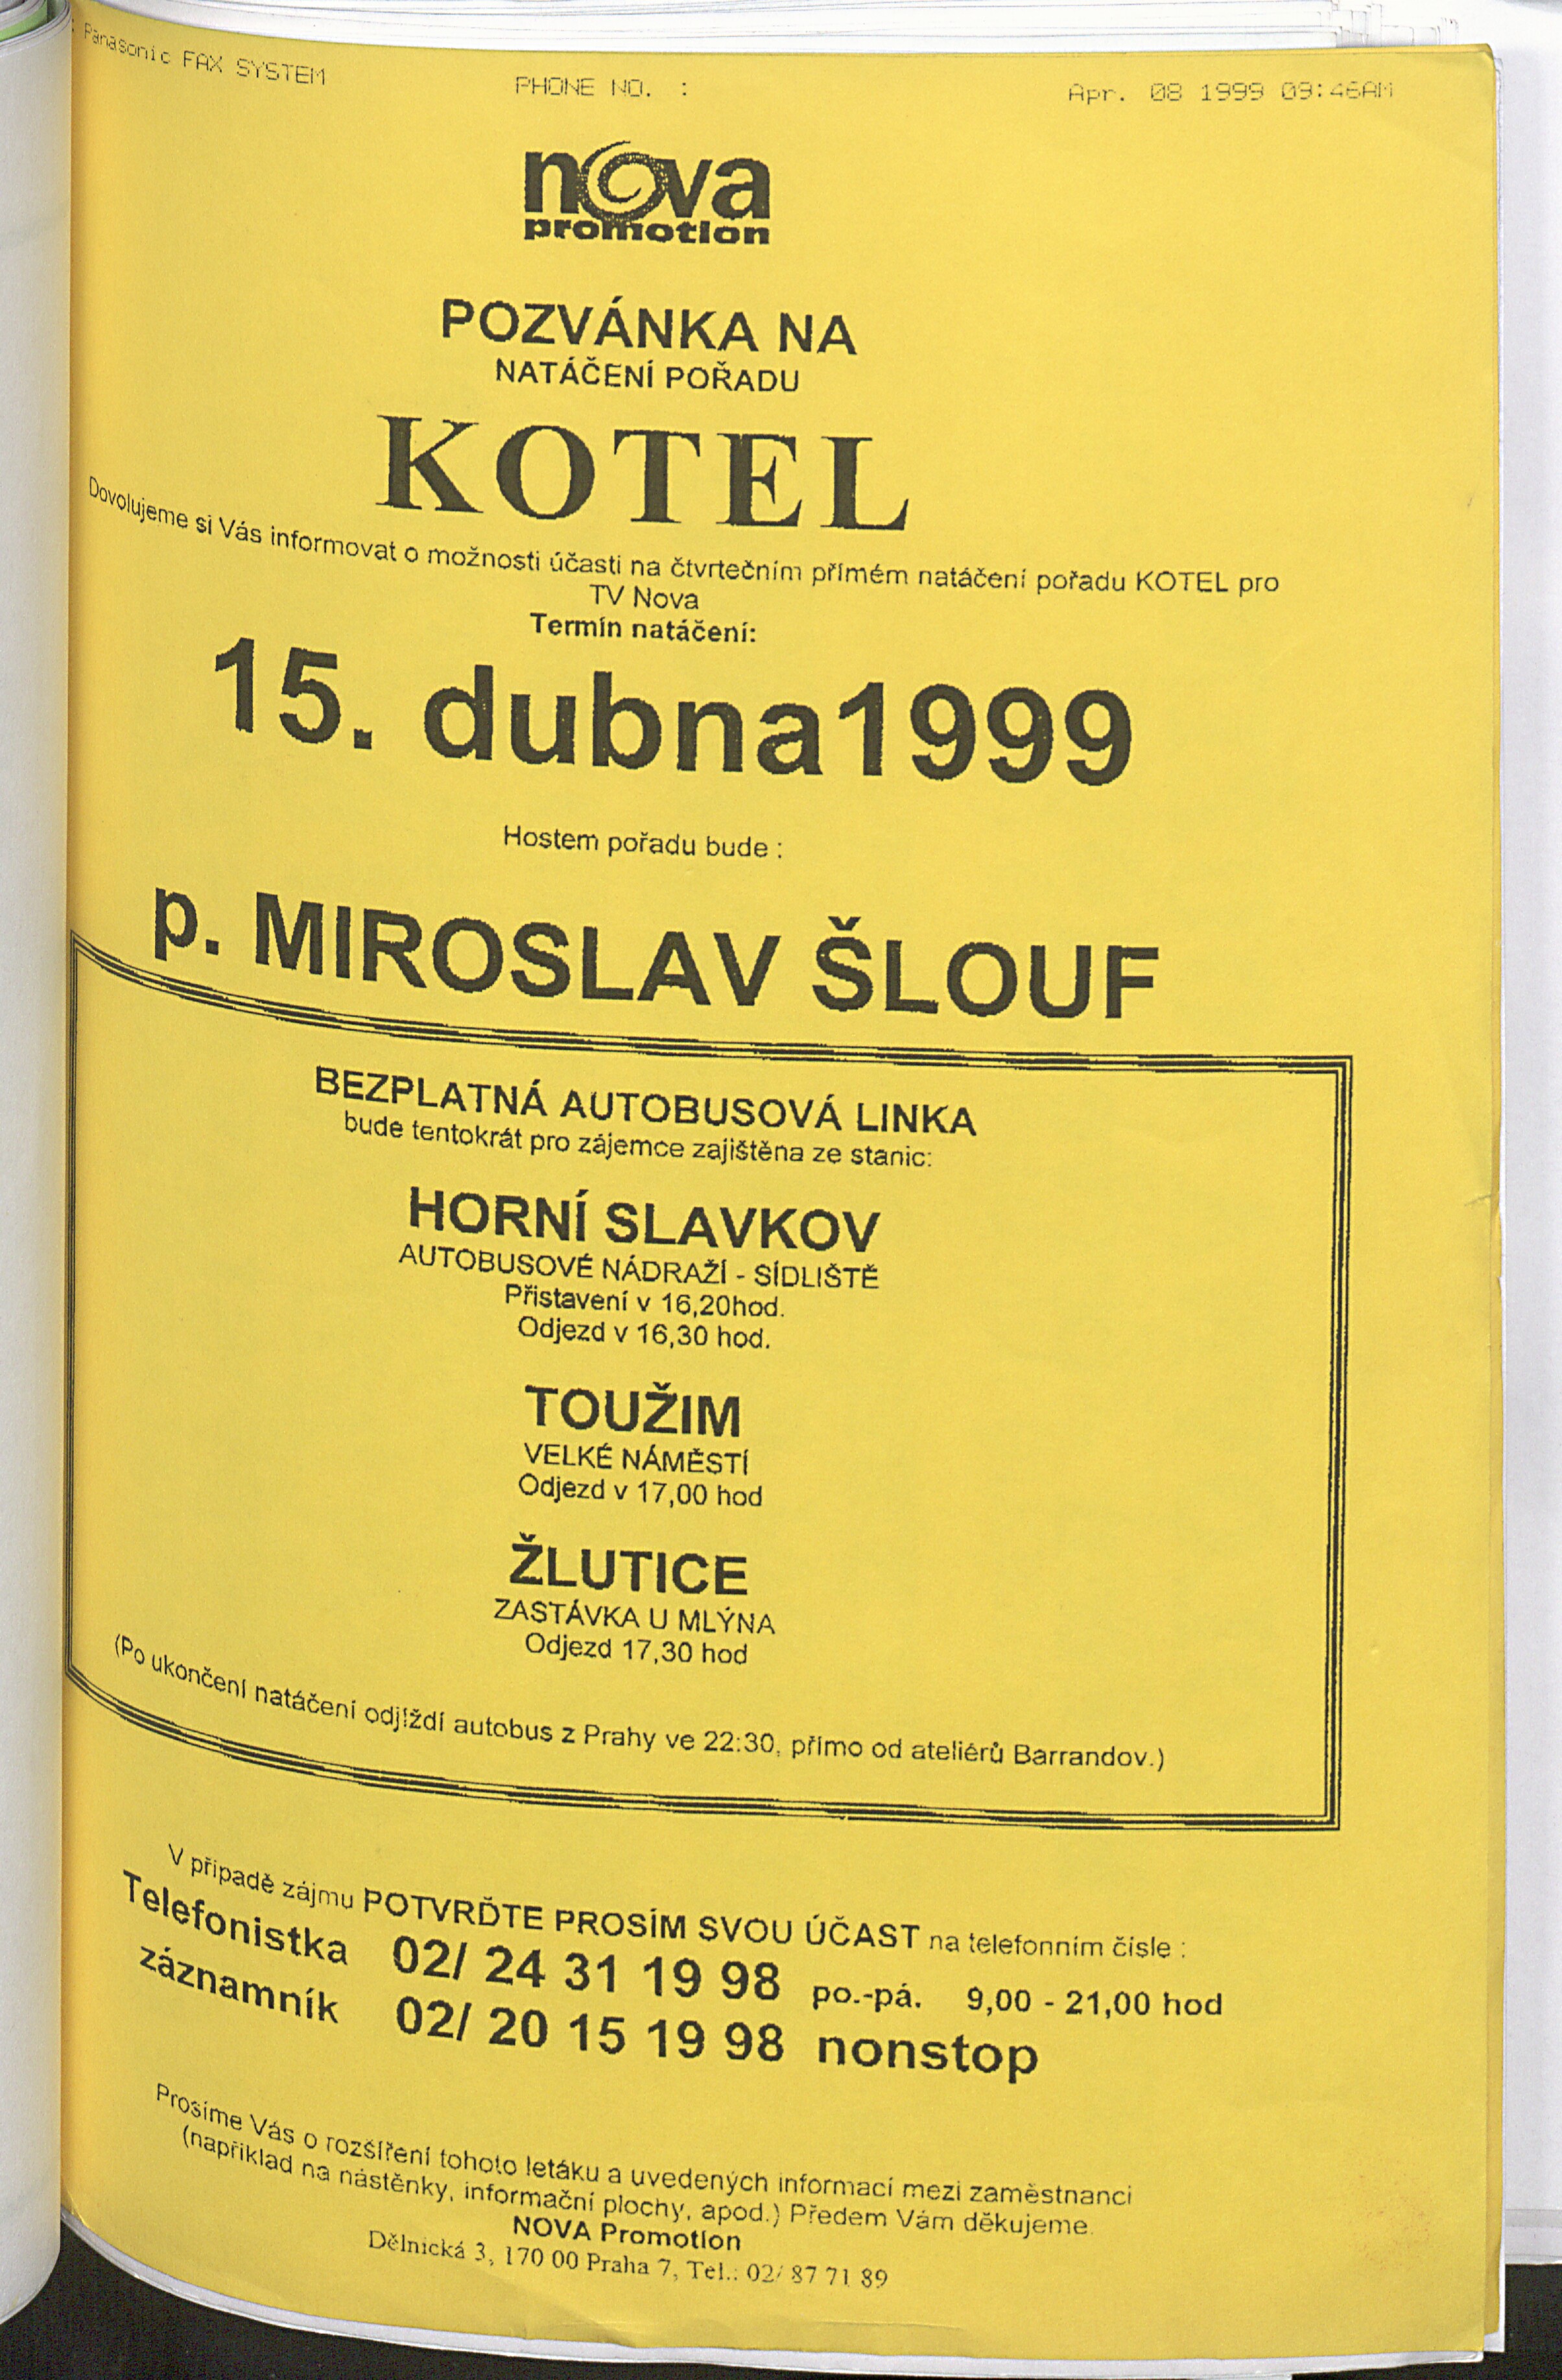 164. soap-kv_01822_mesto-touzim-priohy-1997-2000_1650